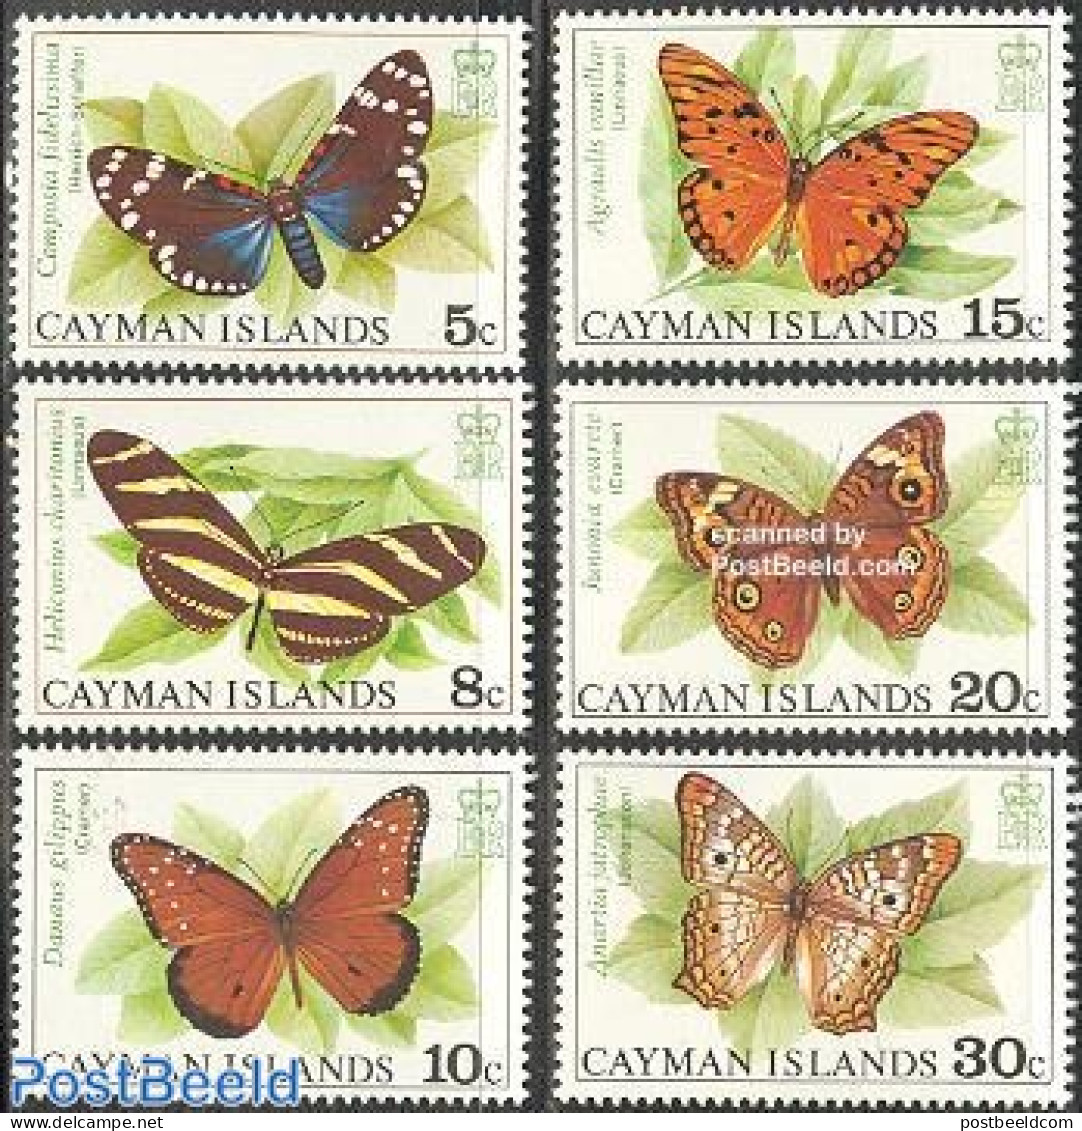 Cayman Islands 1977 Butterflies 6v, Mint NH, Nature - Butterflies - Kaimaninseln